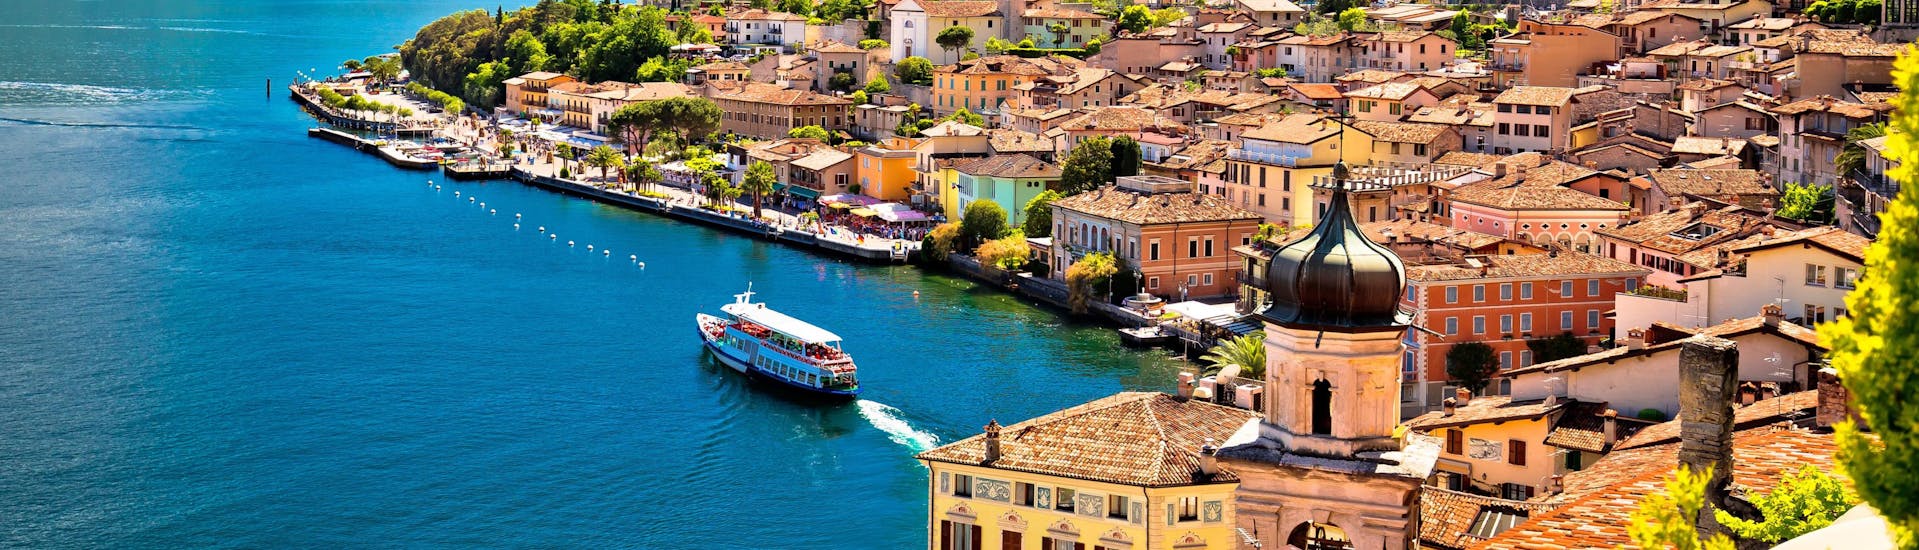 La città di Limone sul Garda, sul Lago di Garda, dove è possibile prenotare online gite in barca.